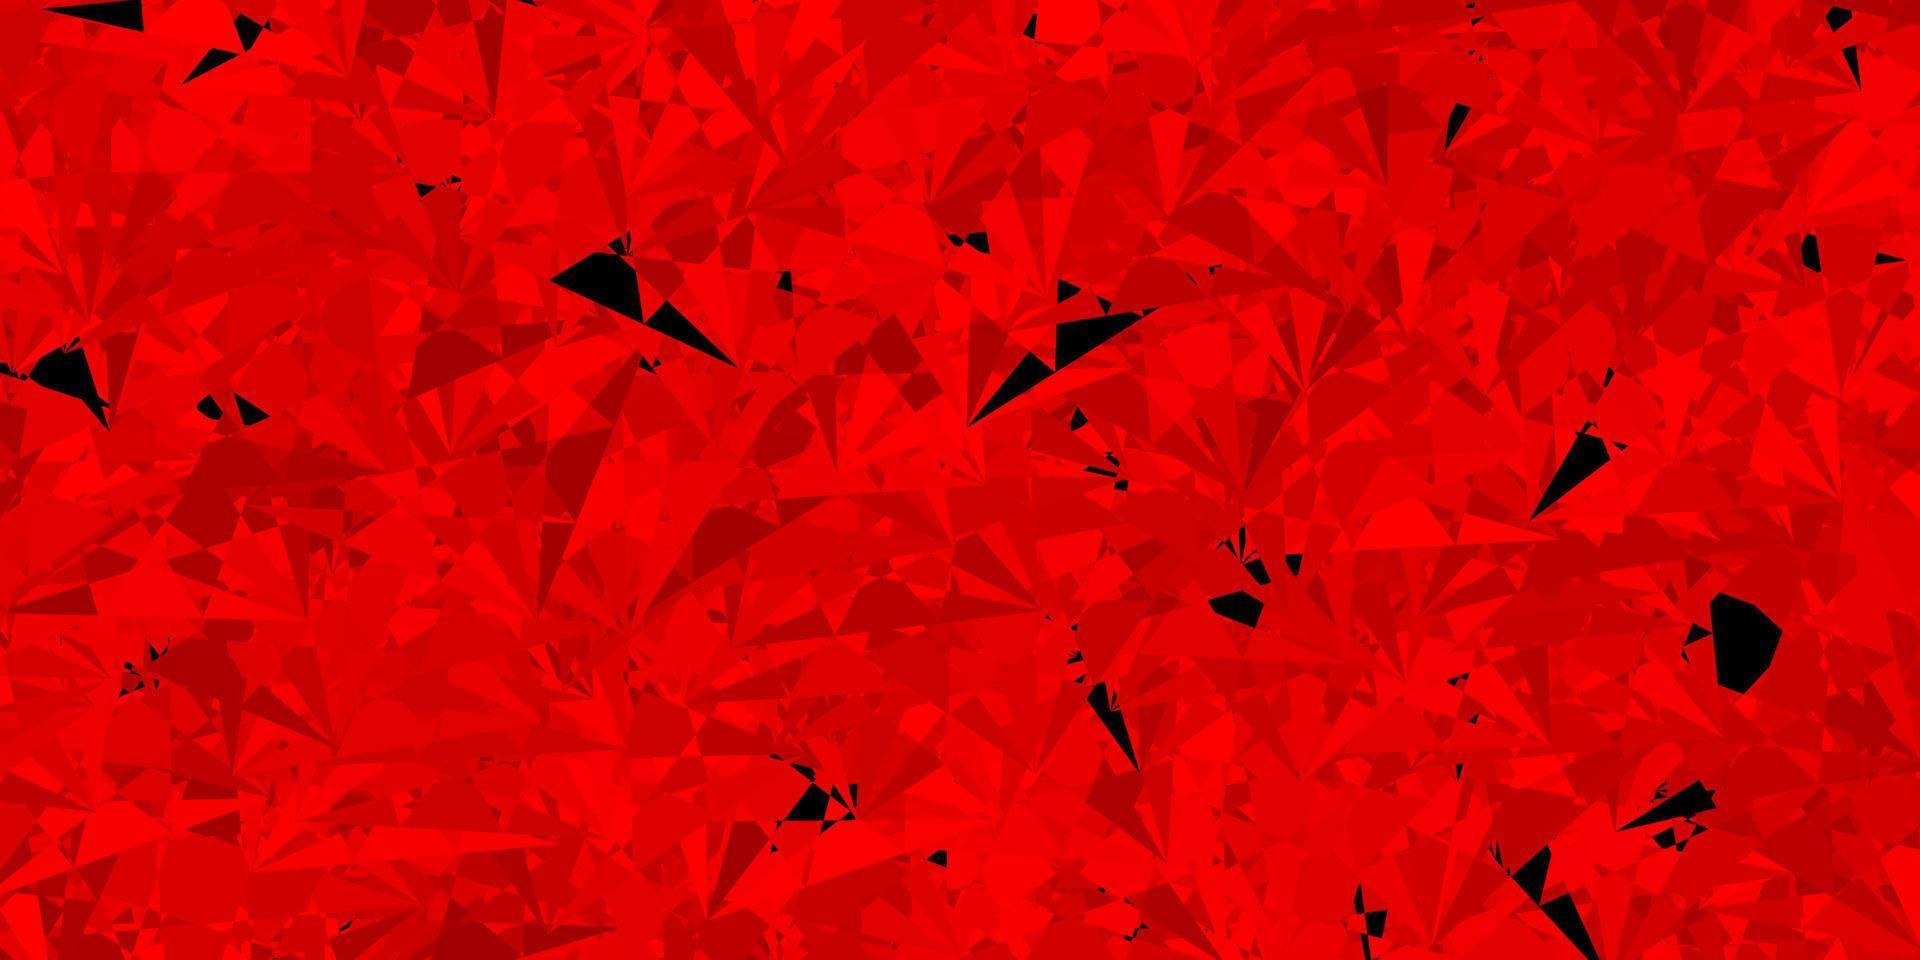 sfondo vettoriale rosso scuro con triangoli.